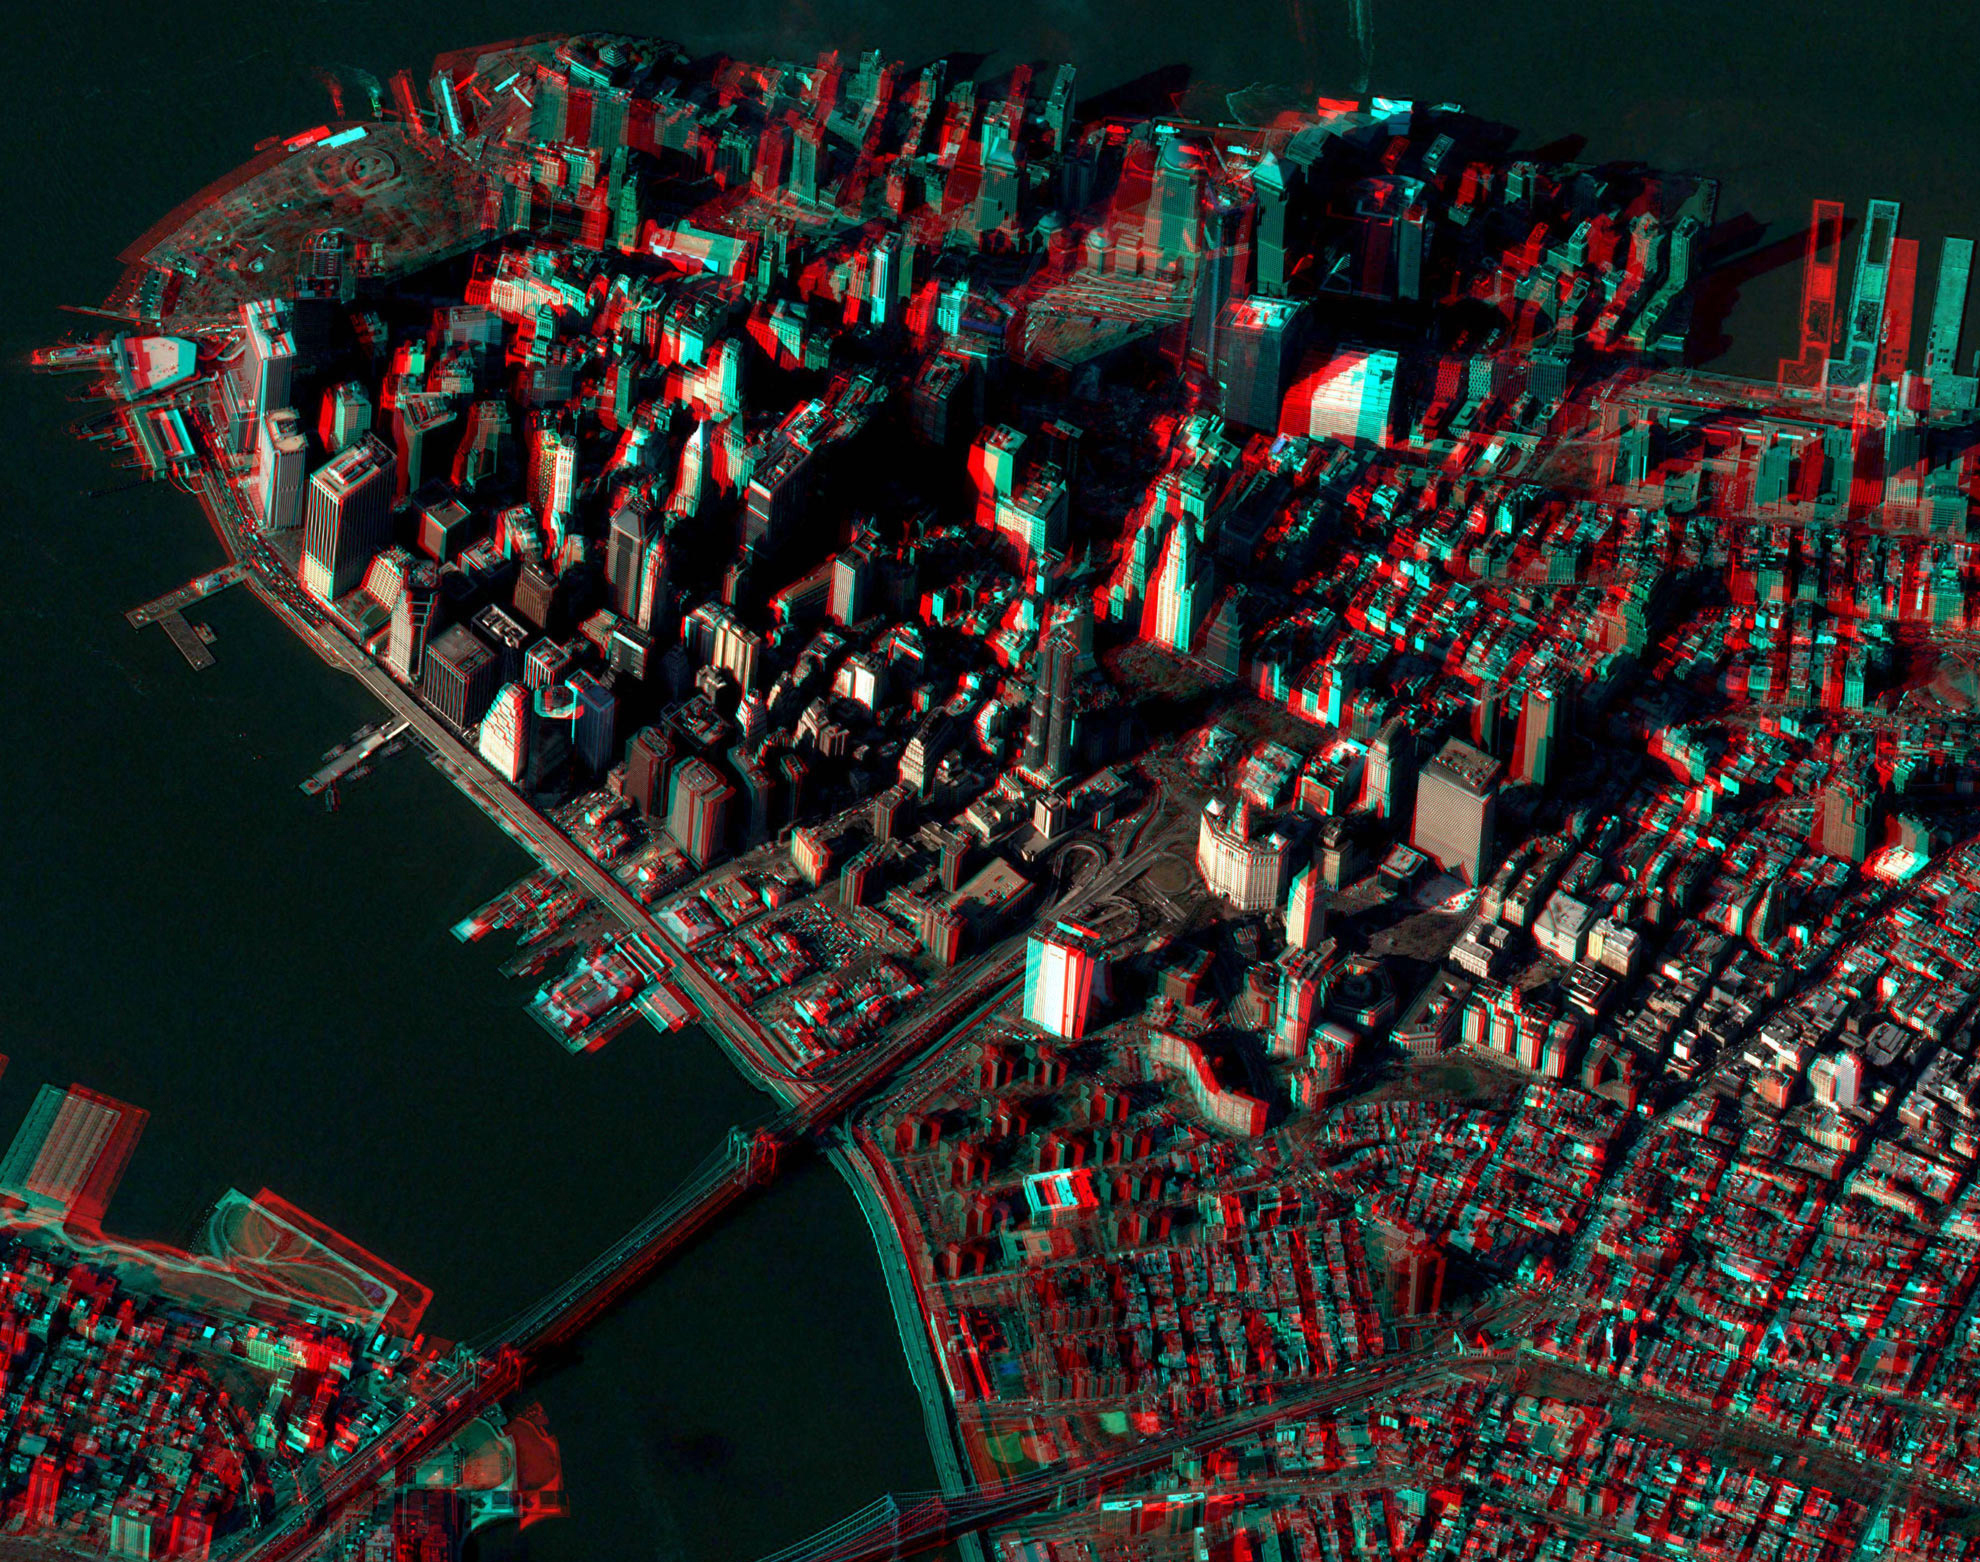 А это 3D фотография Манхеттена снятая французким спутником. Дом - в левом верхнем углу. Если есть очки с разноцветными линзами - рекоммендую посмотреть. Хайрез доступен по этой ссылке.